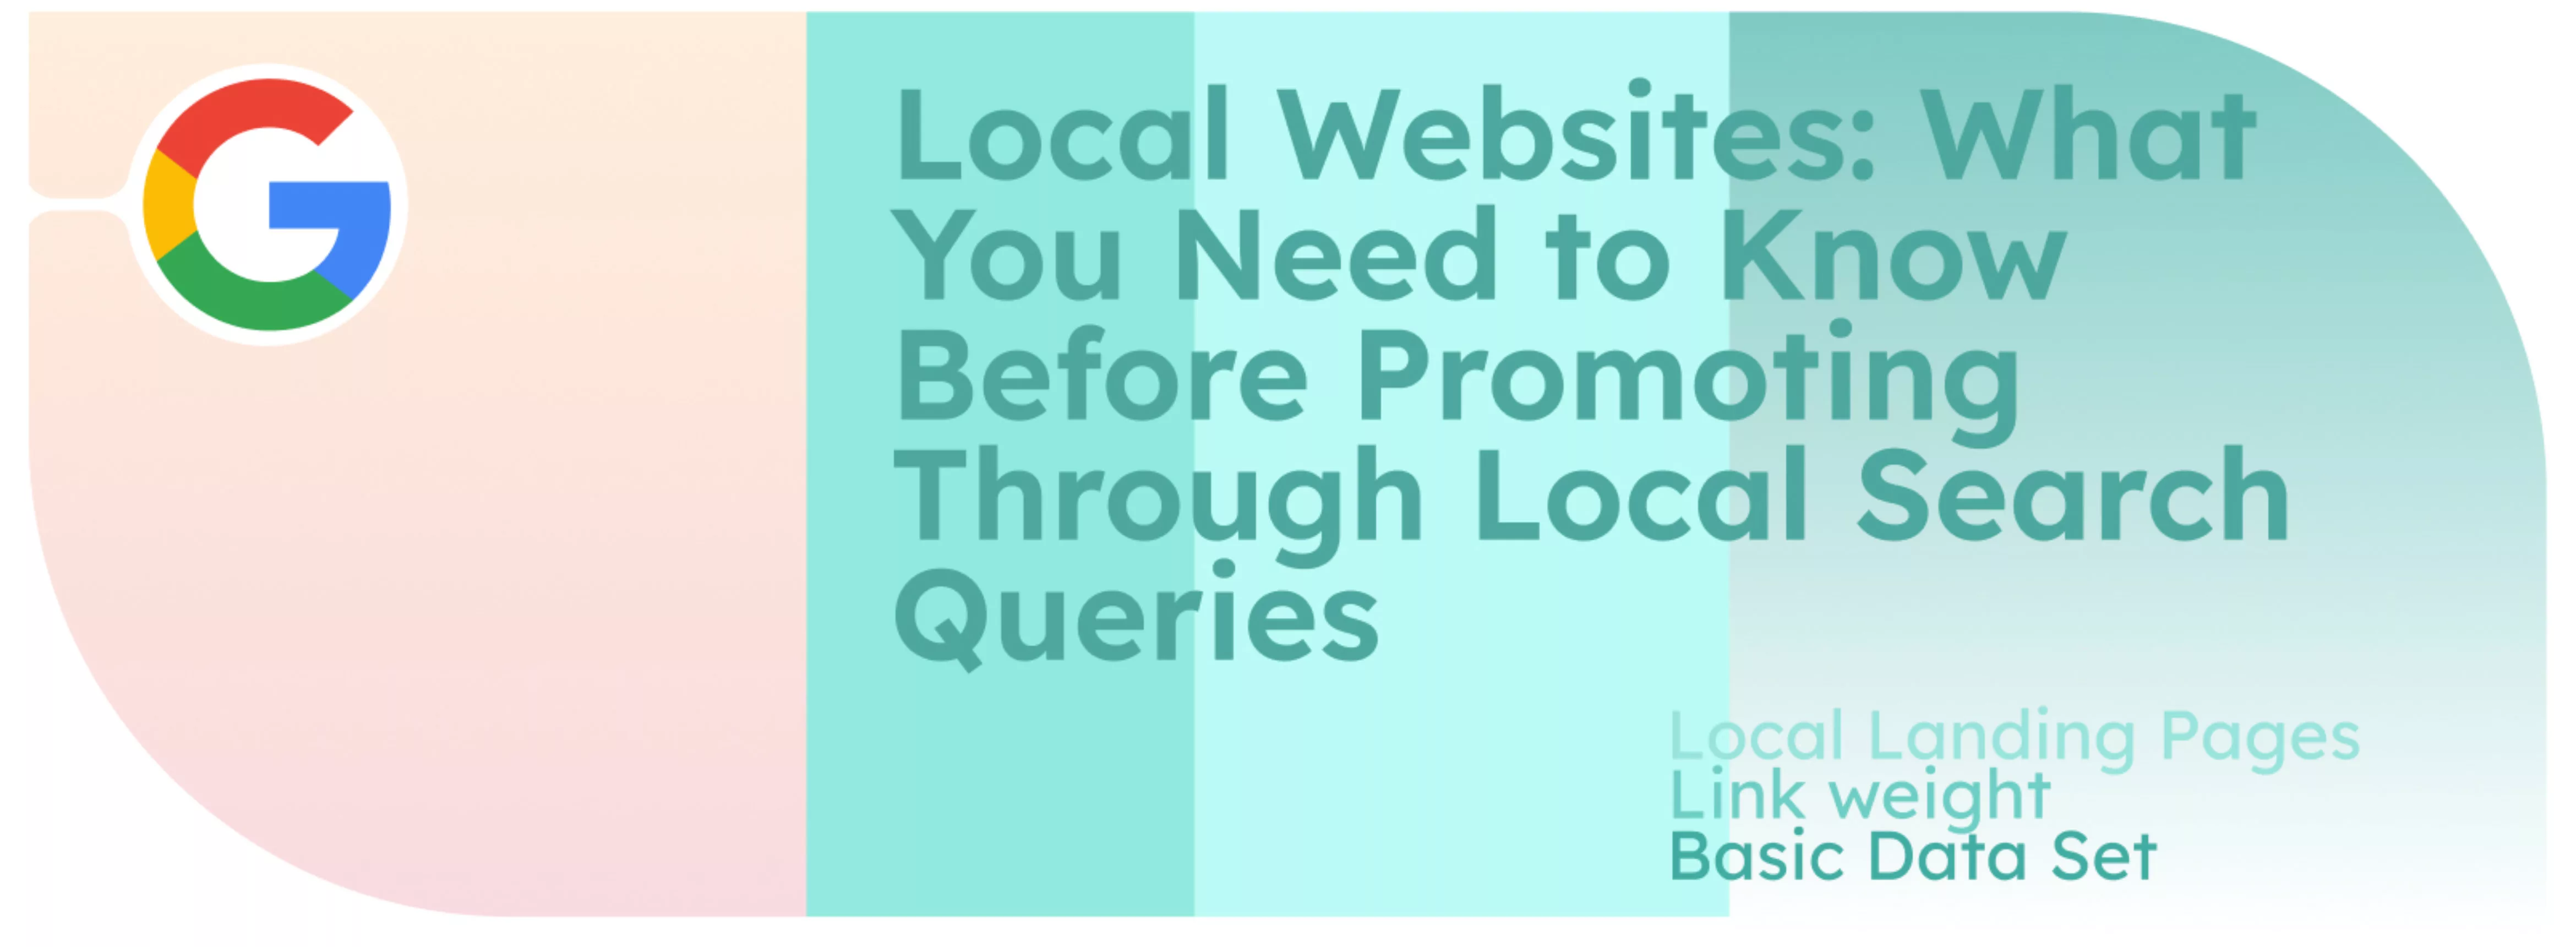 Siti web locali: Cosa bisogna sapere prima di promuovere attraverso le query di ricerca locali